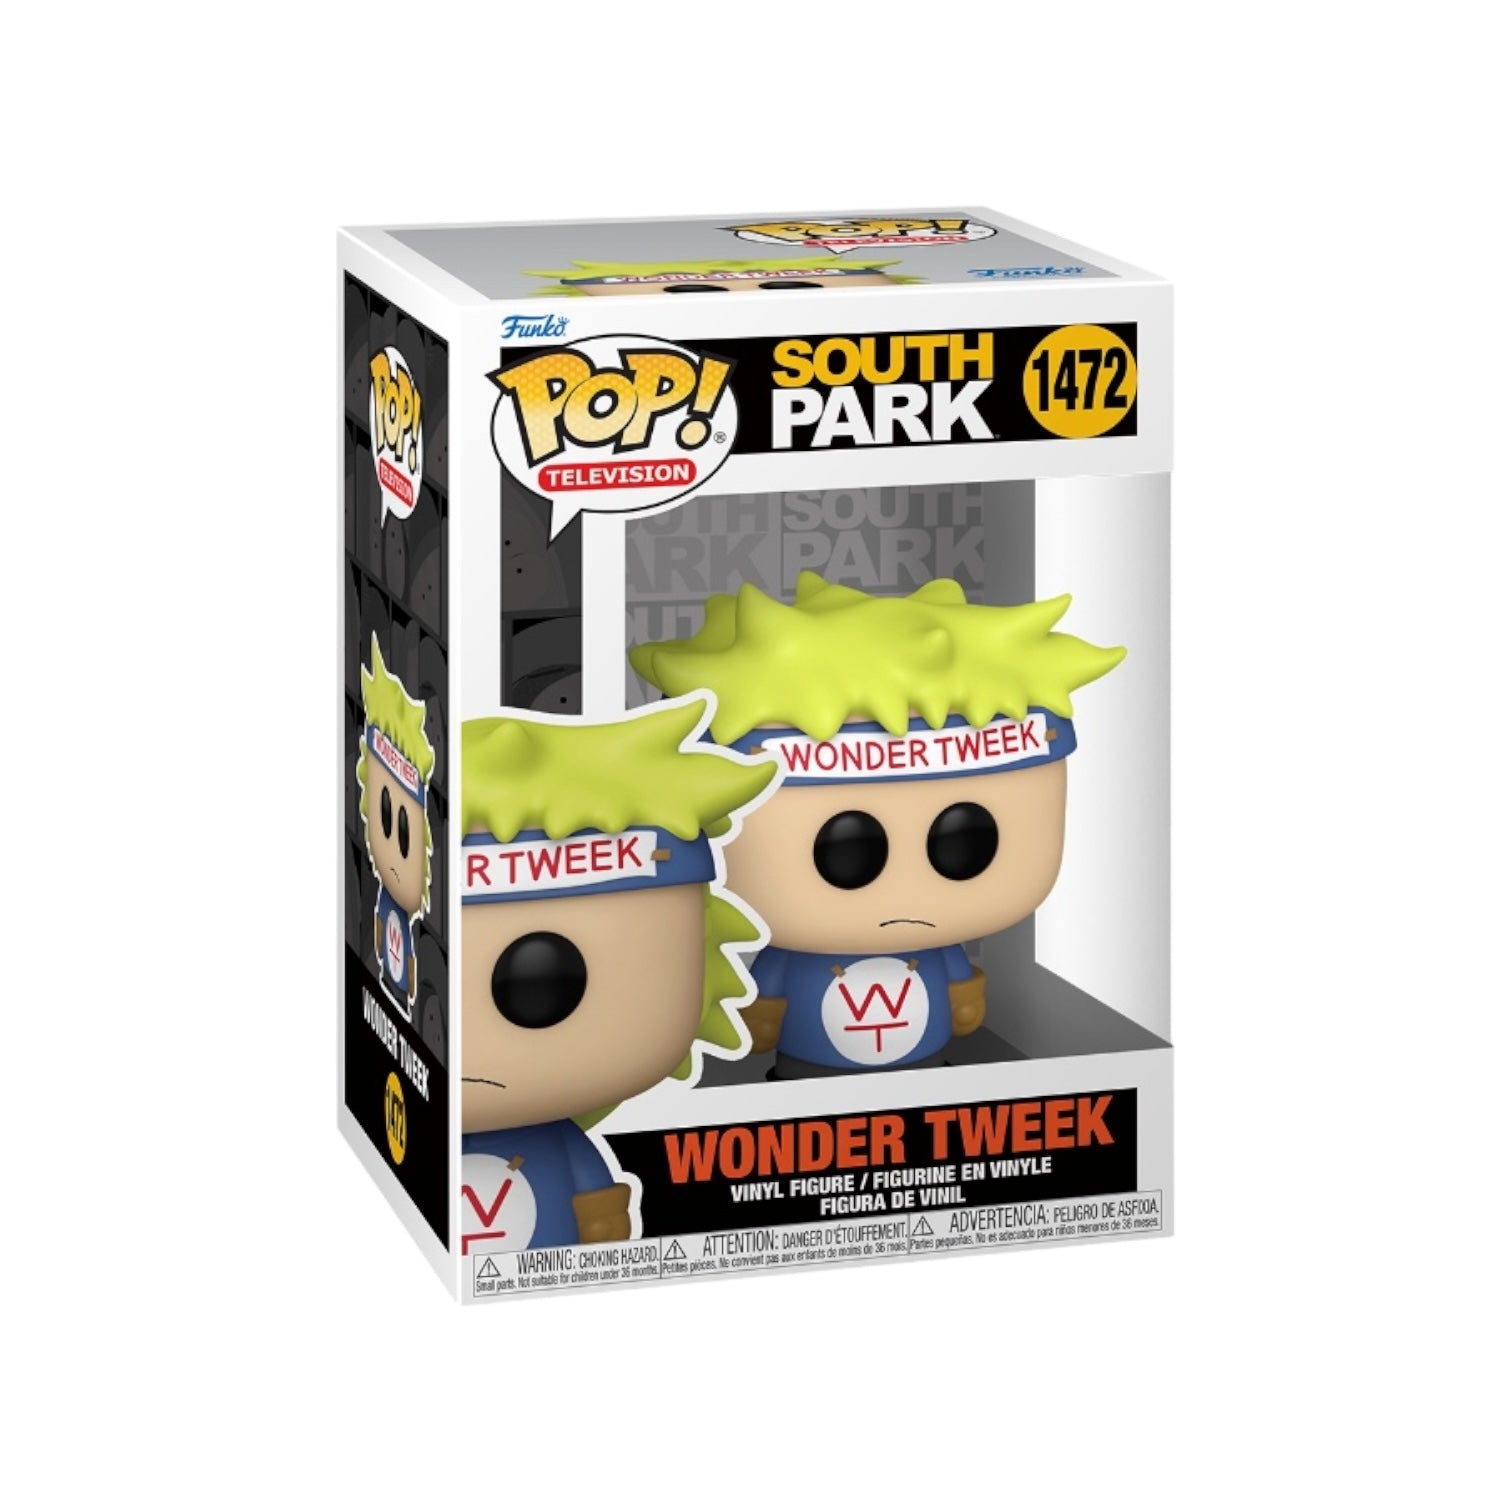 Wonder Tweek #1472 Funko Pop! - South Park